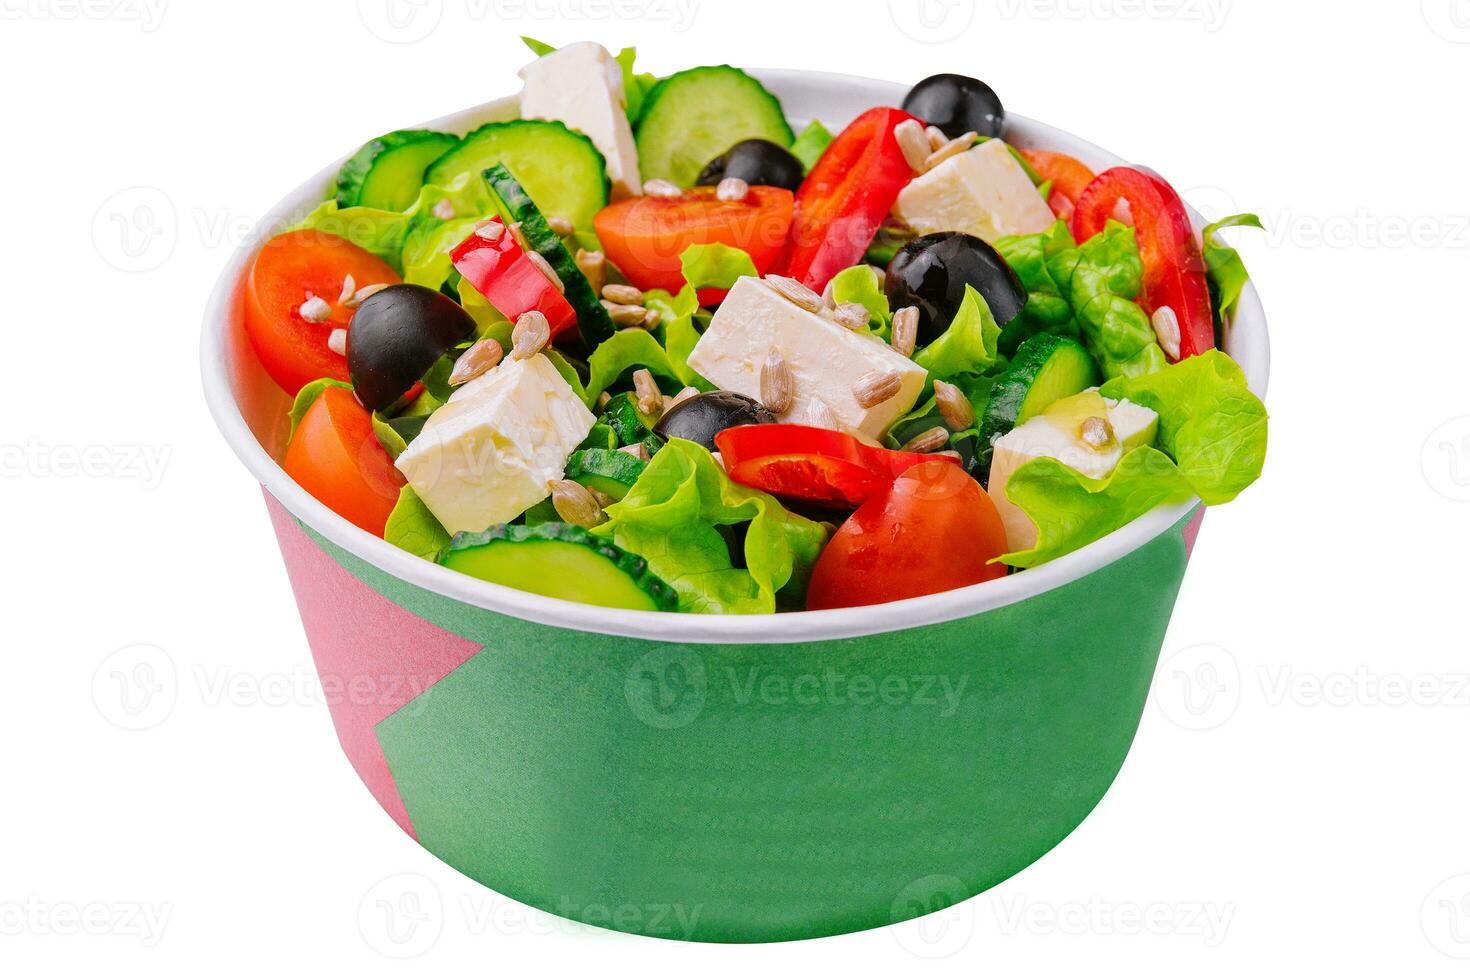 traditionell grekisk sallad med fetaost och grönsaker foto